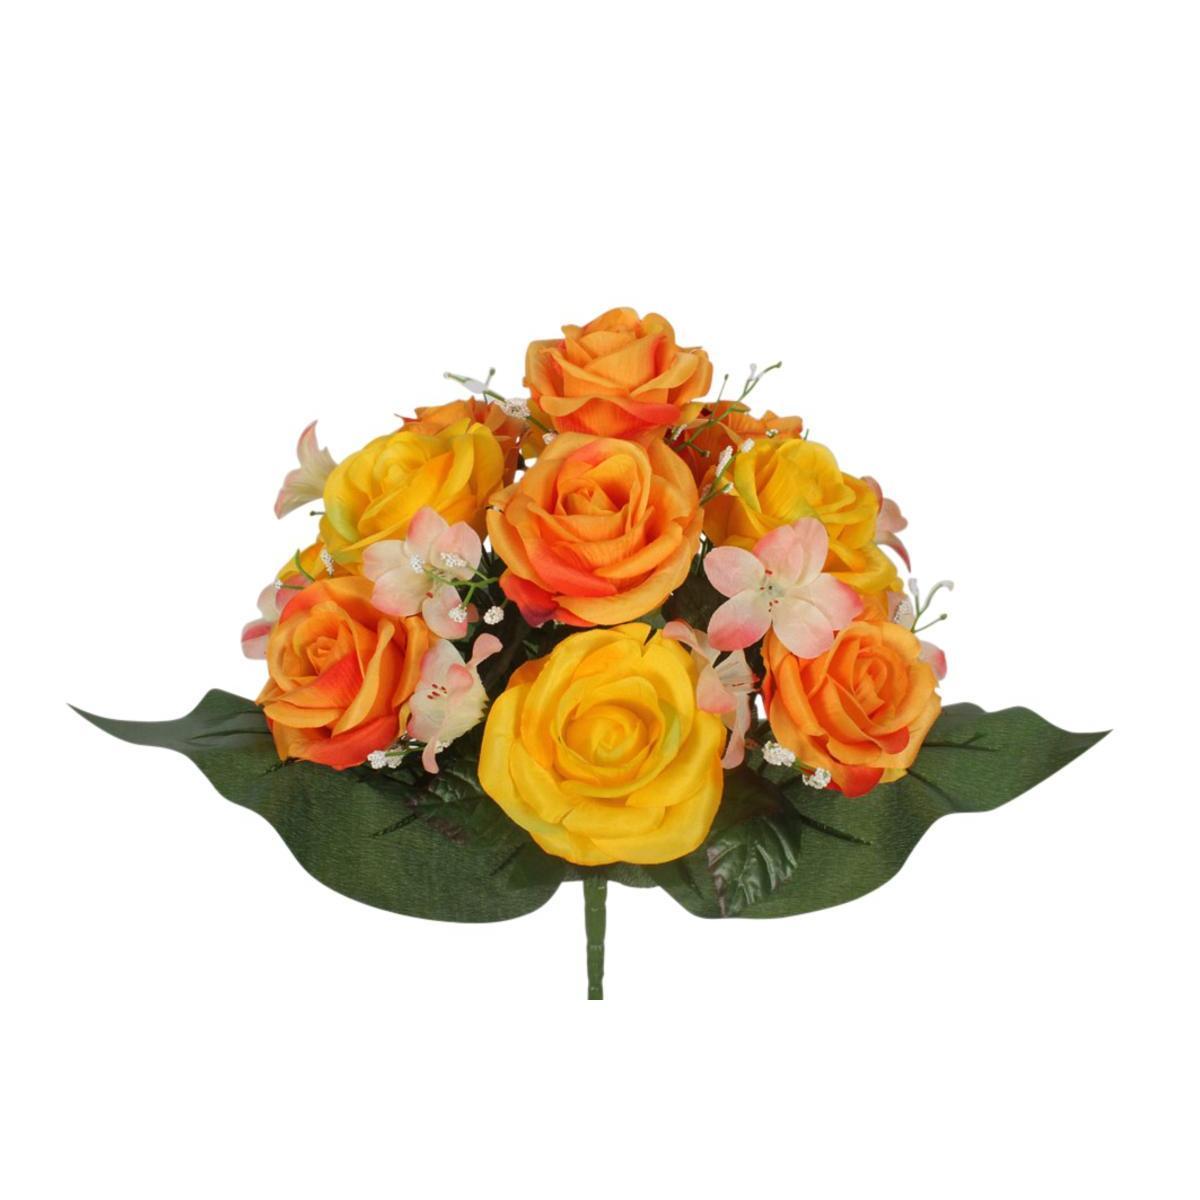 Bouquet de roses - Orange et jaune